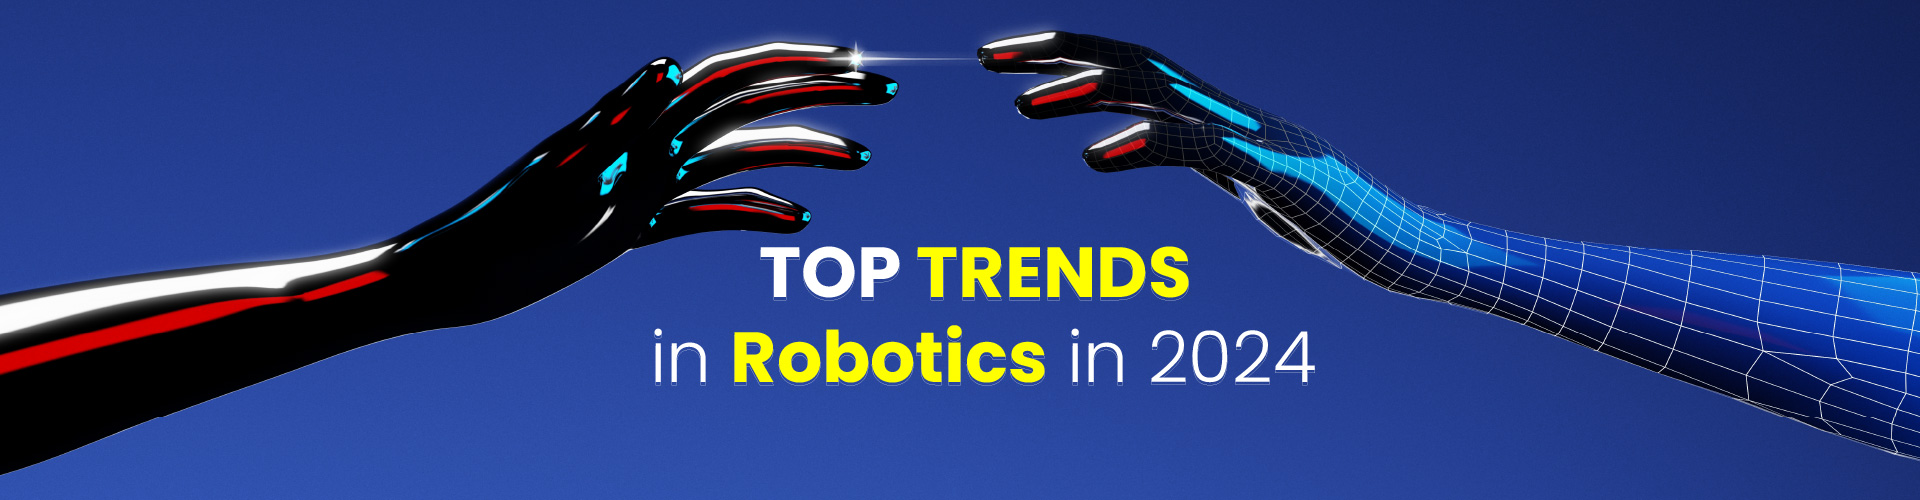 Top Trends In Robotics